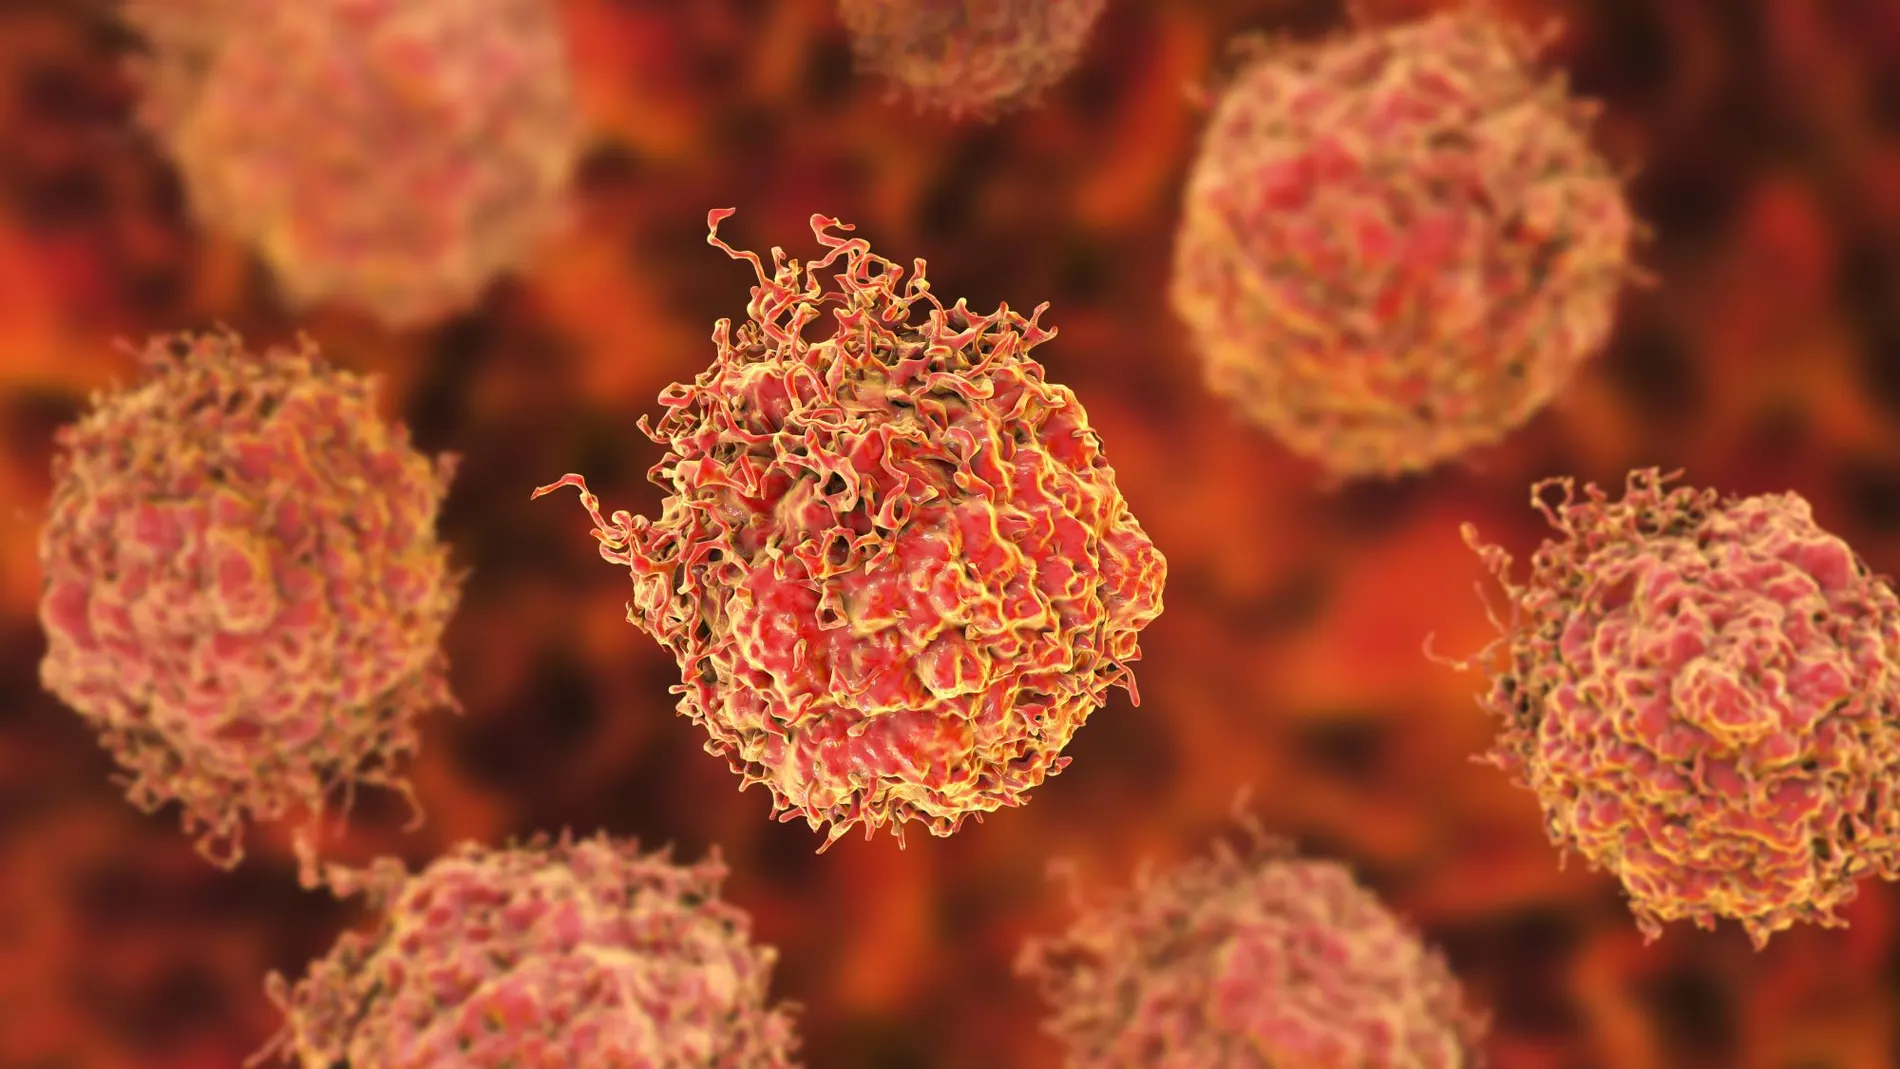 Biopsia fusión: el último avance diagnóstico del cáncer de próstata